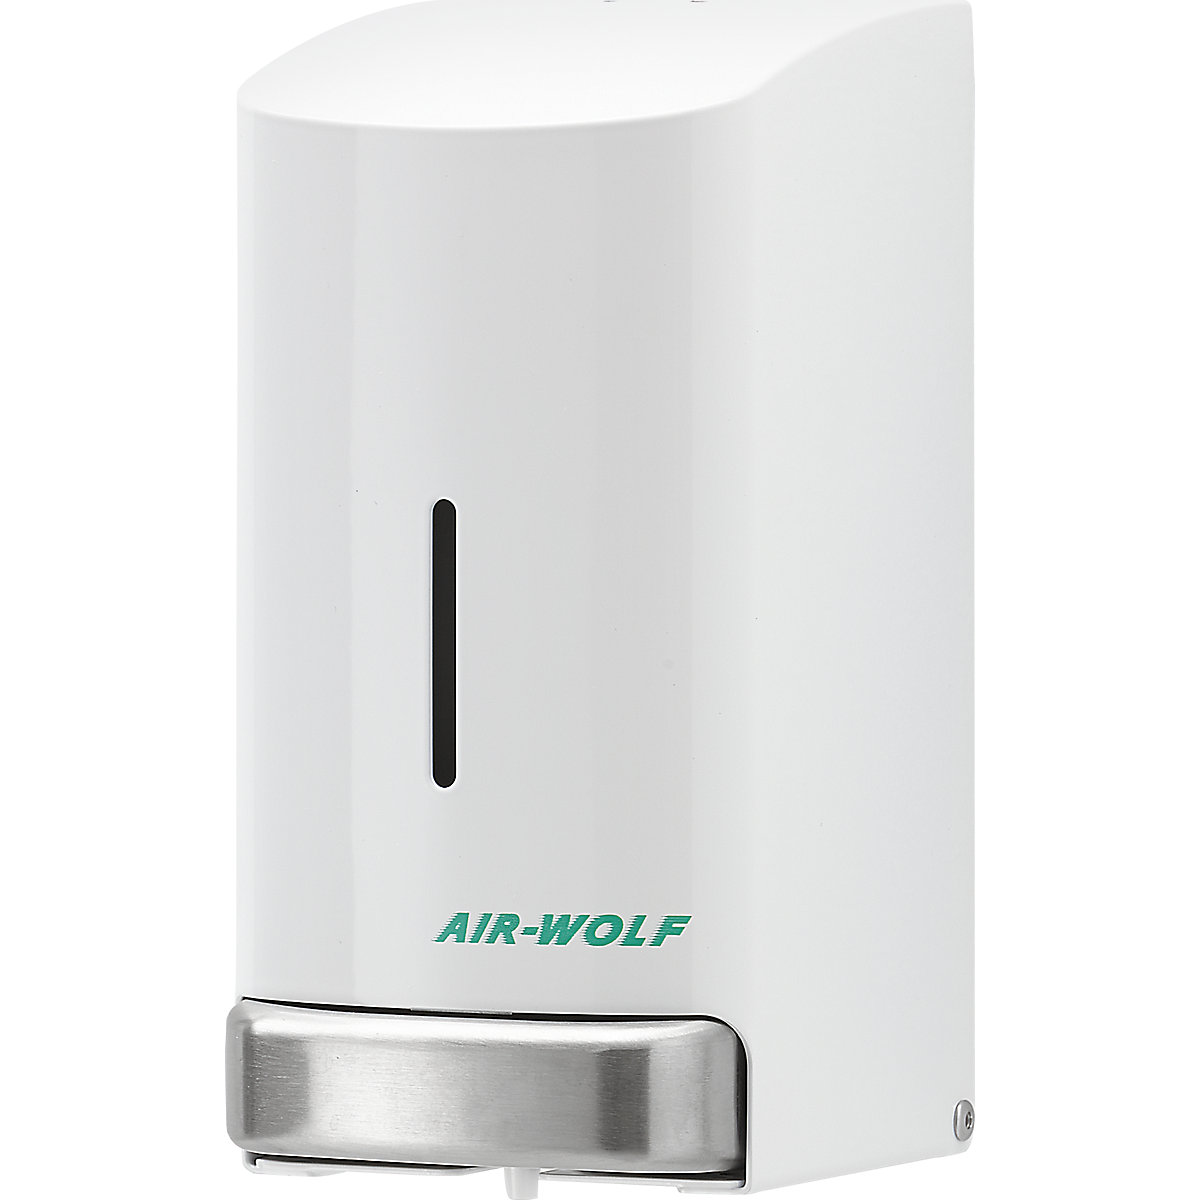 AIR-WOLF Edelstahl-Seifenspender, Inhalt 0,8 l, weiß beschichtet